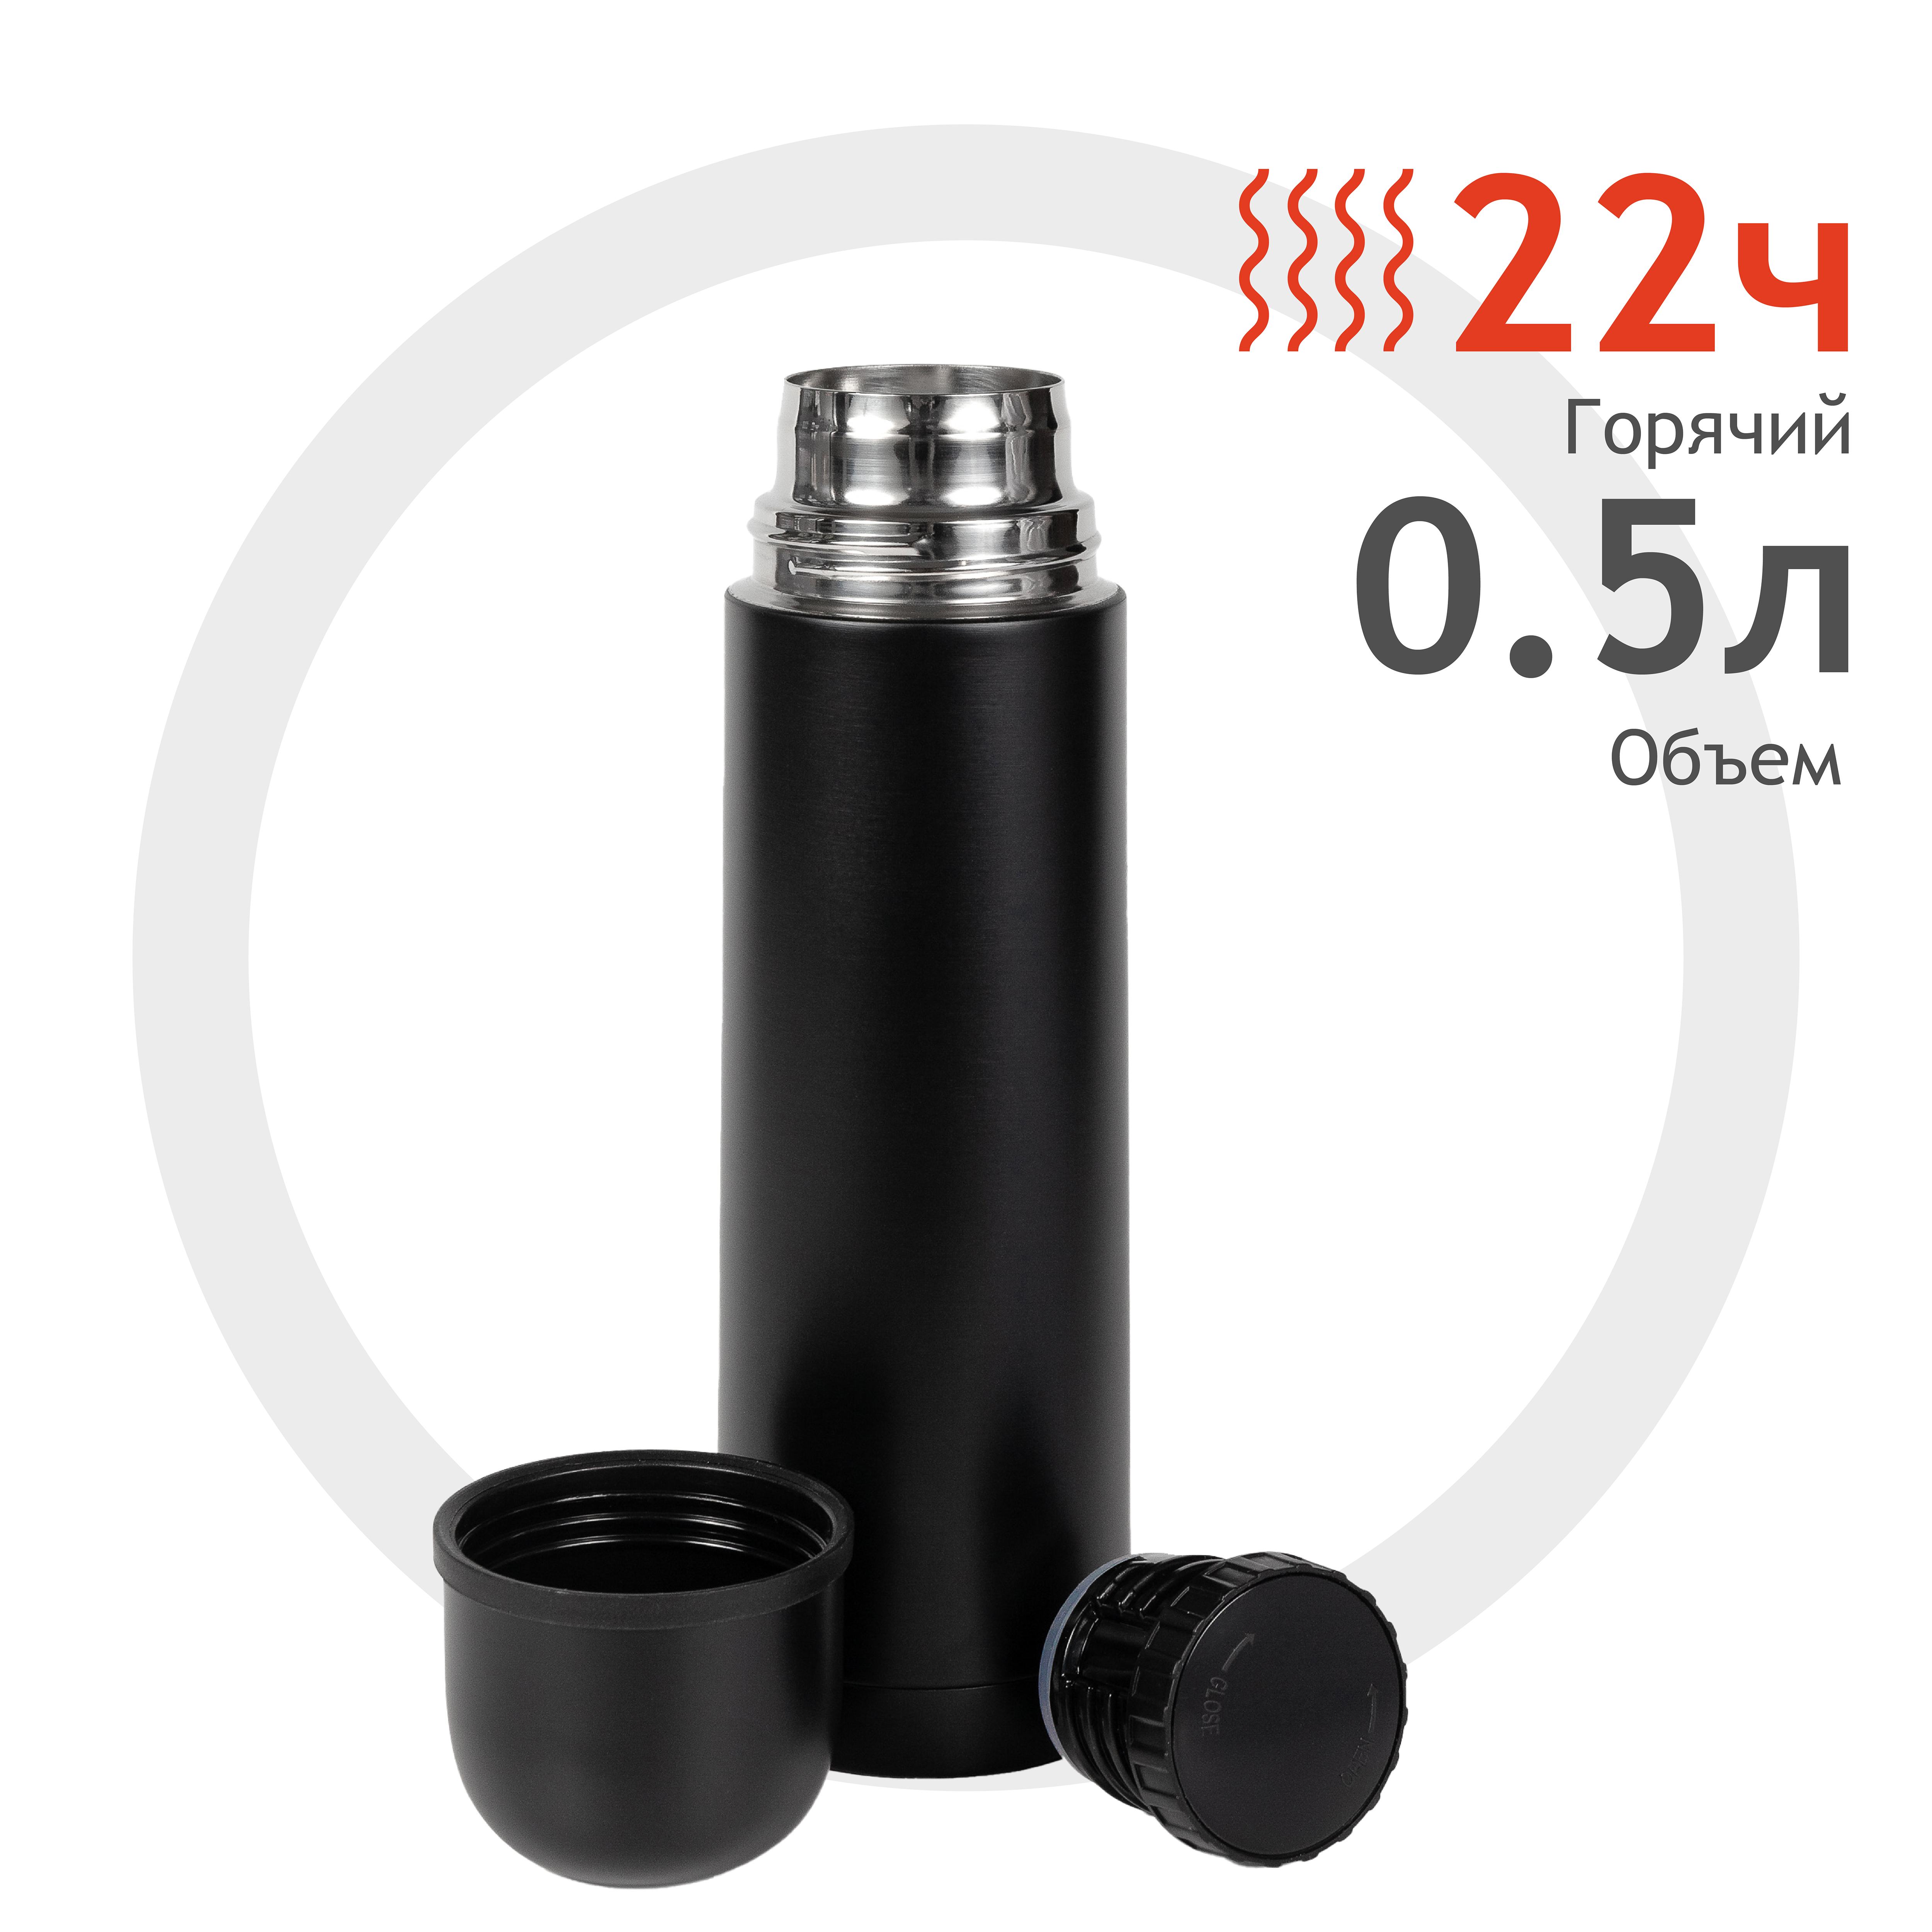 Термос Relaxika 101 (0,5 литра), оружейный черный (без лого)